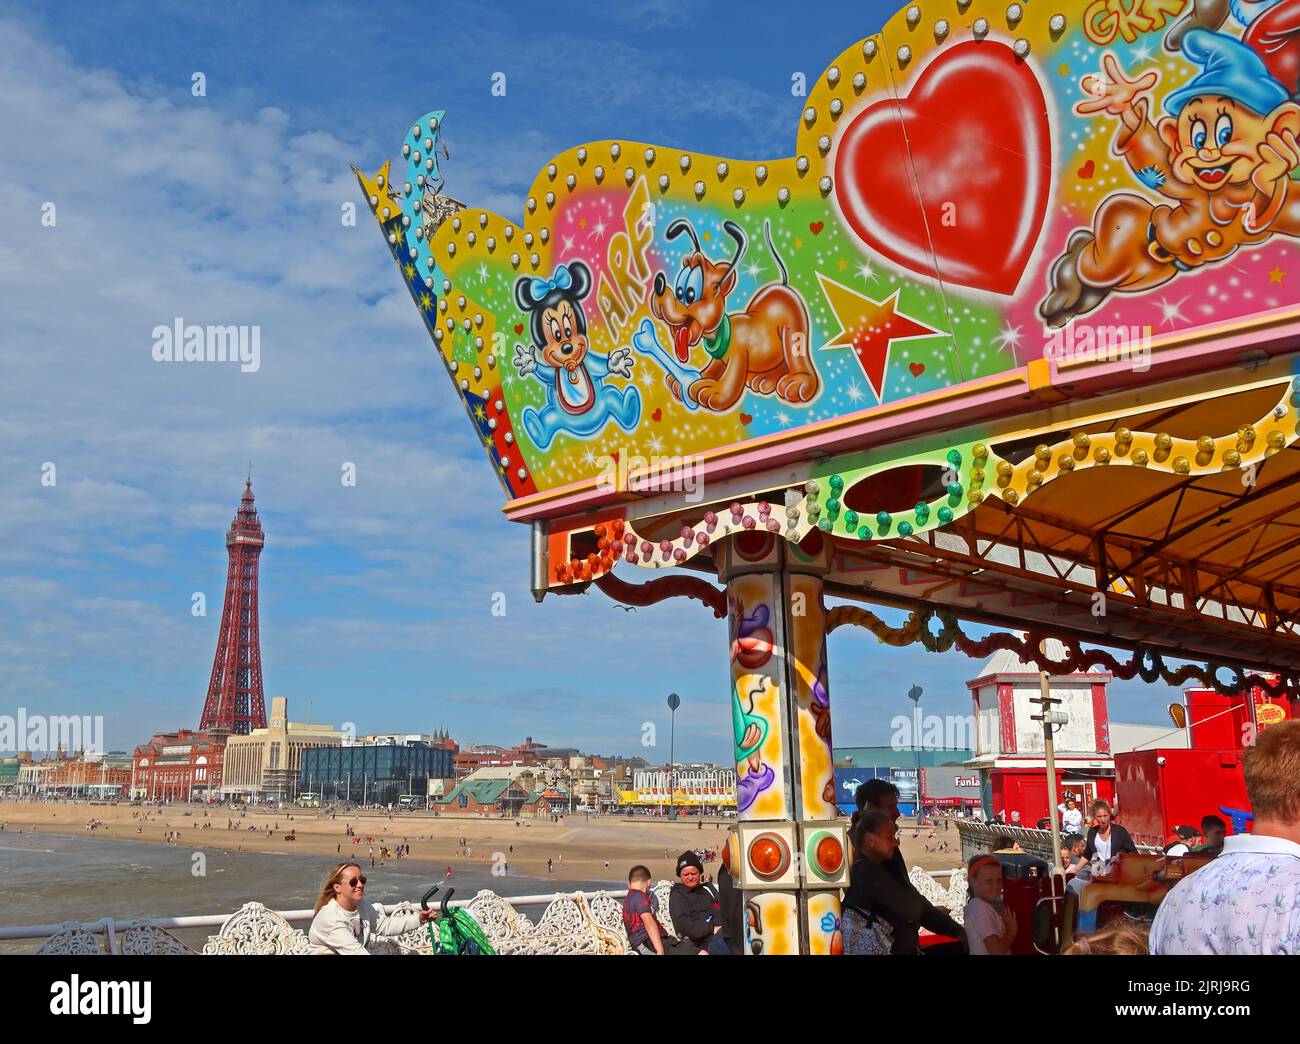 Tour et promenade de Blackpool, vue de Central Piers Victorian 1868 BoardWalk, Blackpool, Lancashire, Angleterre, Royaume-Uni, FY1 5BB Banque D'Images